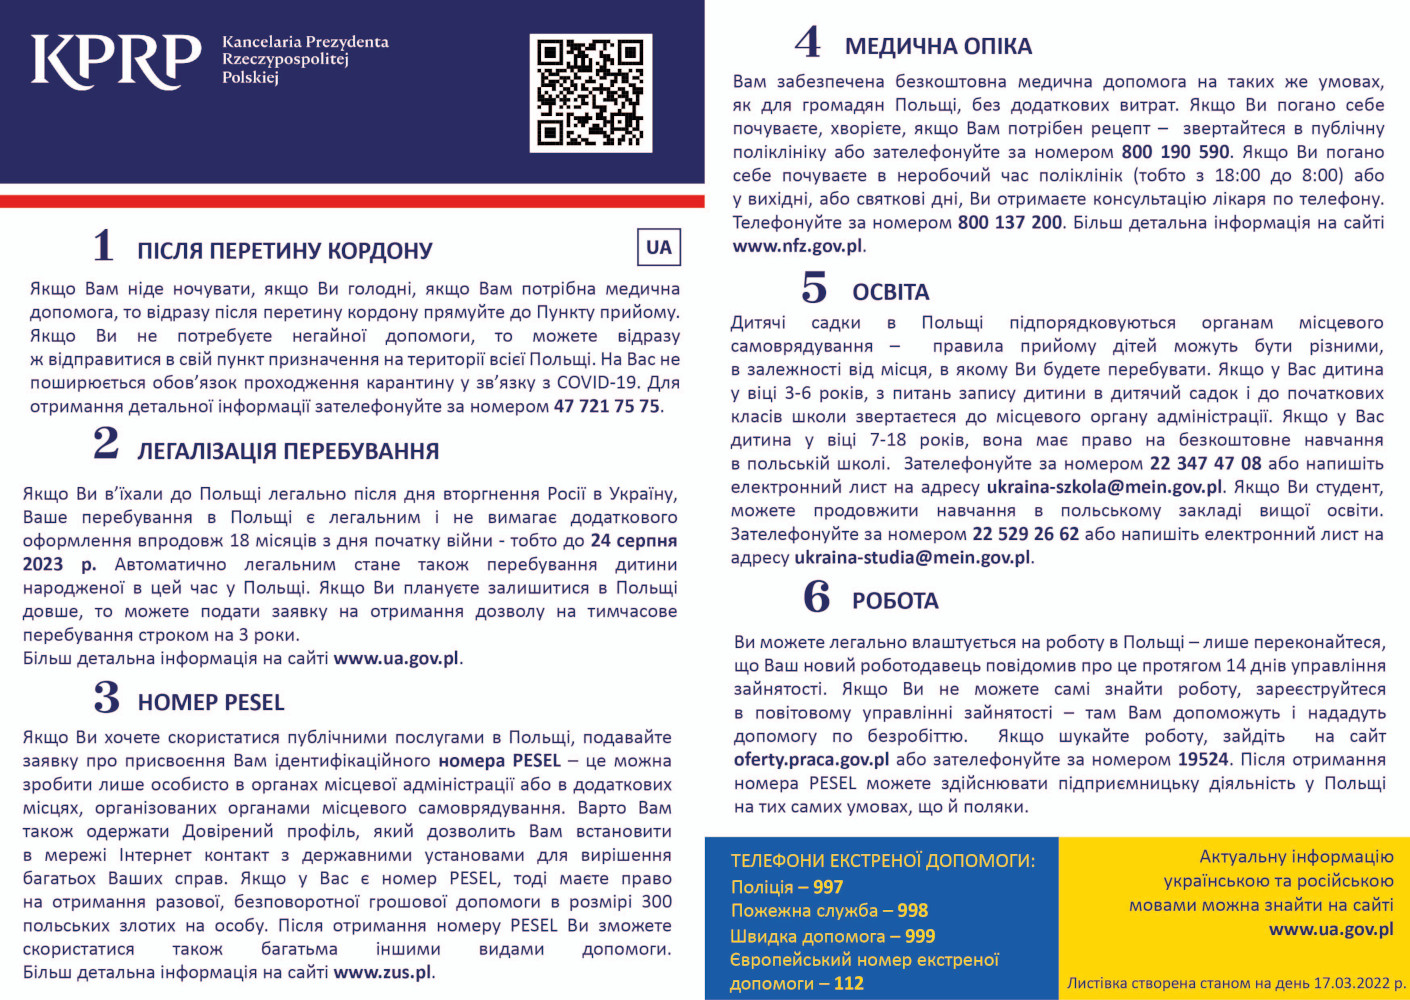 Ulotka ze zaktualizowanymi informacje dla uchodźców przekraczających granicę w języku ukraińskim